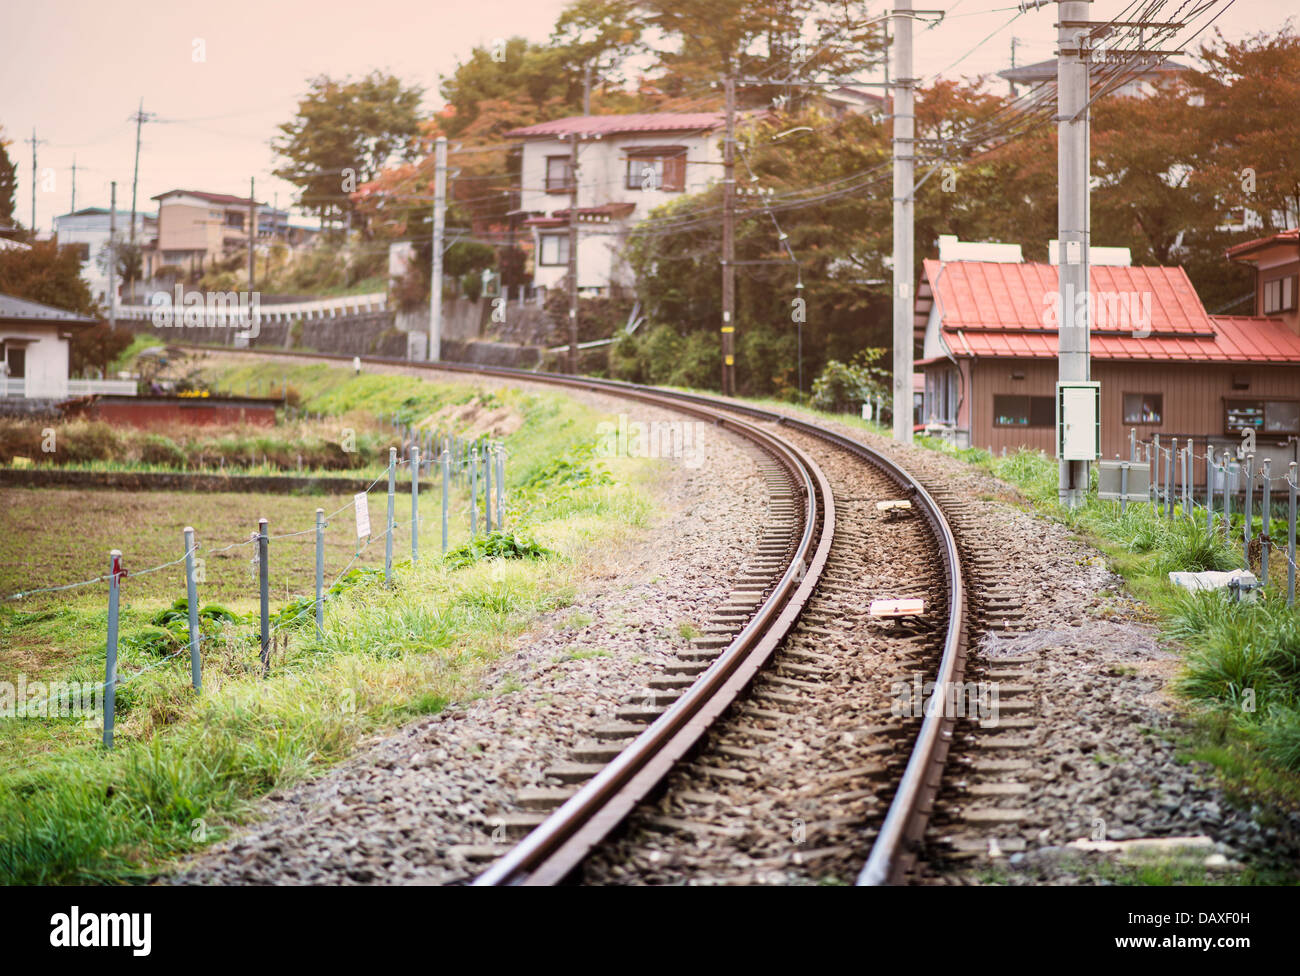 Trainieren Sie Bahnen verlaufen durch einen ländlichen japanischen Viertel in Fujiyoshida, Japan. Stockfoto